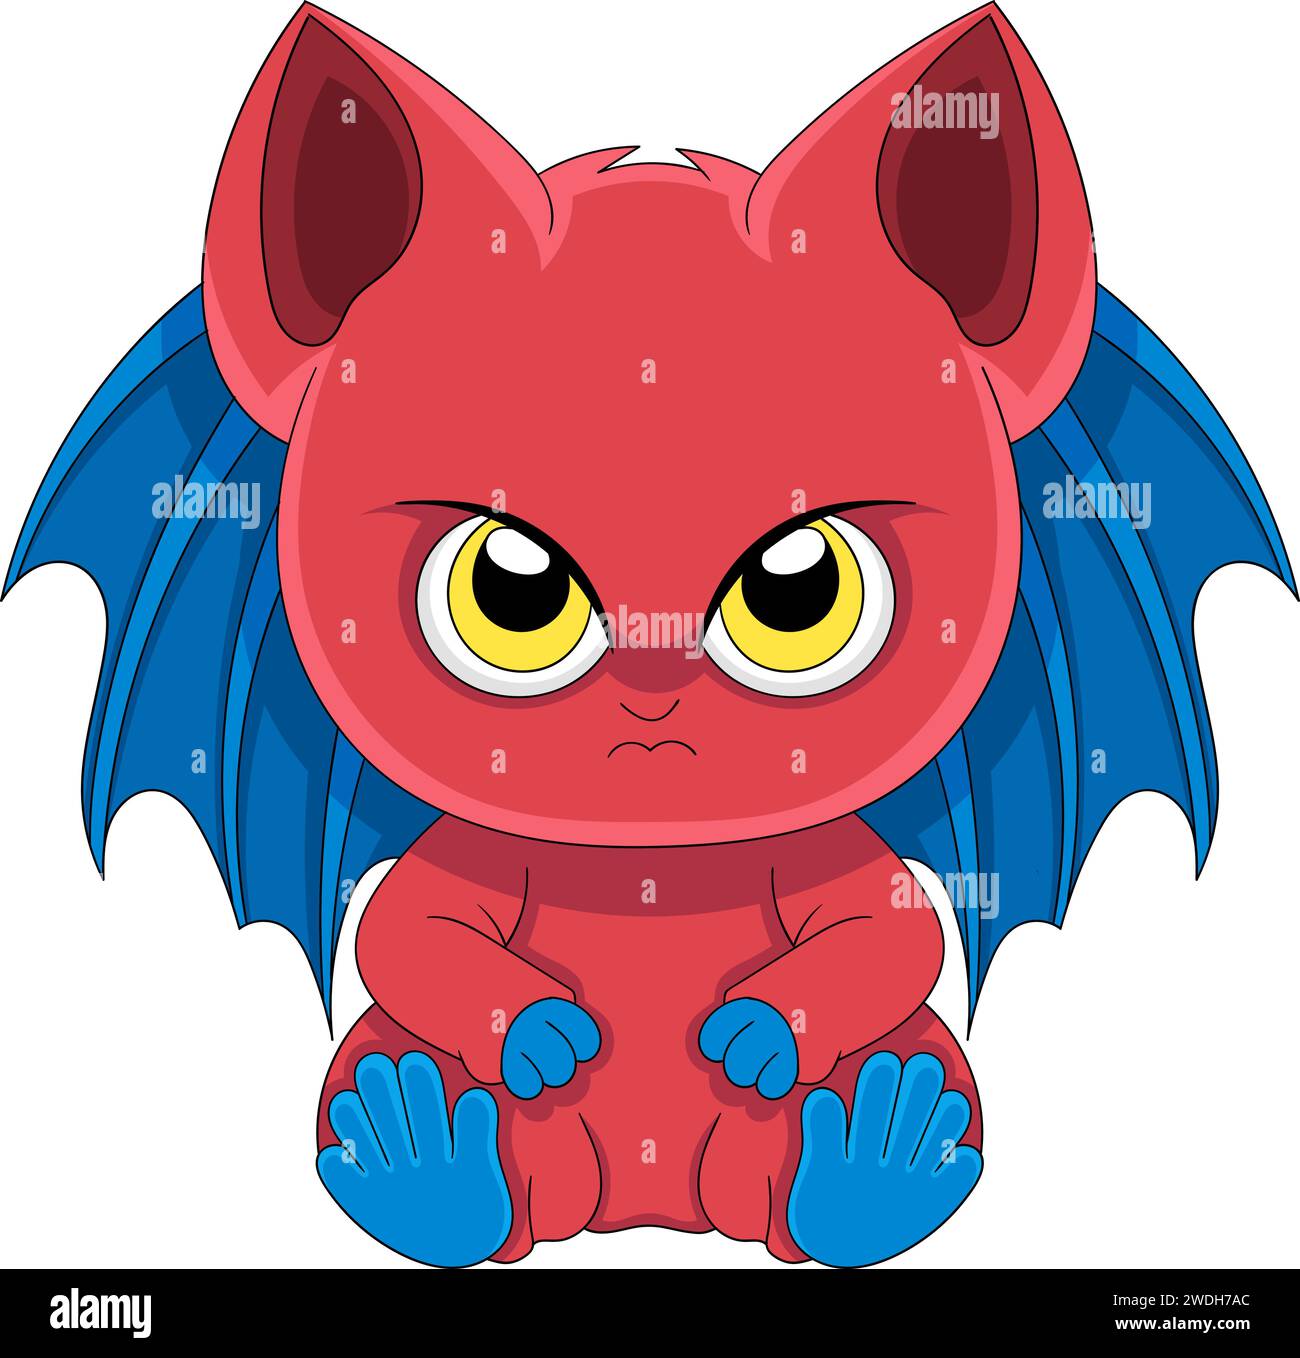 logo de dessin animé d'un diable rouge mignon avec des ailes bleues avec un visage en colère. image créative Illustration de Vecteur